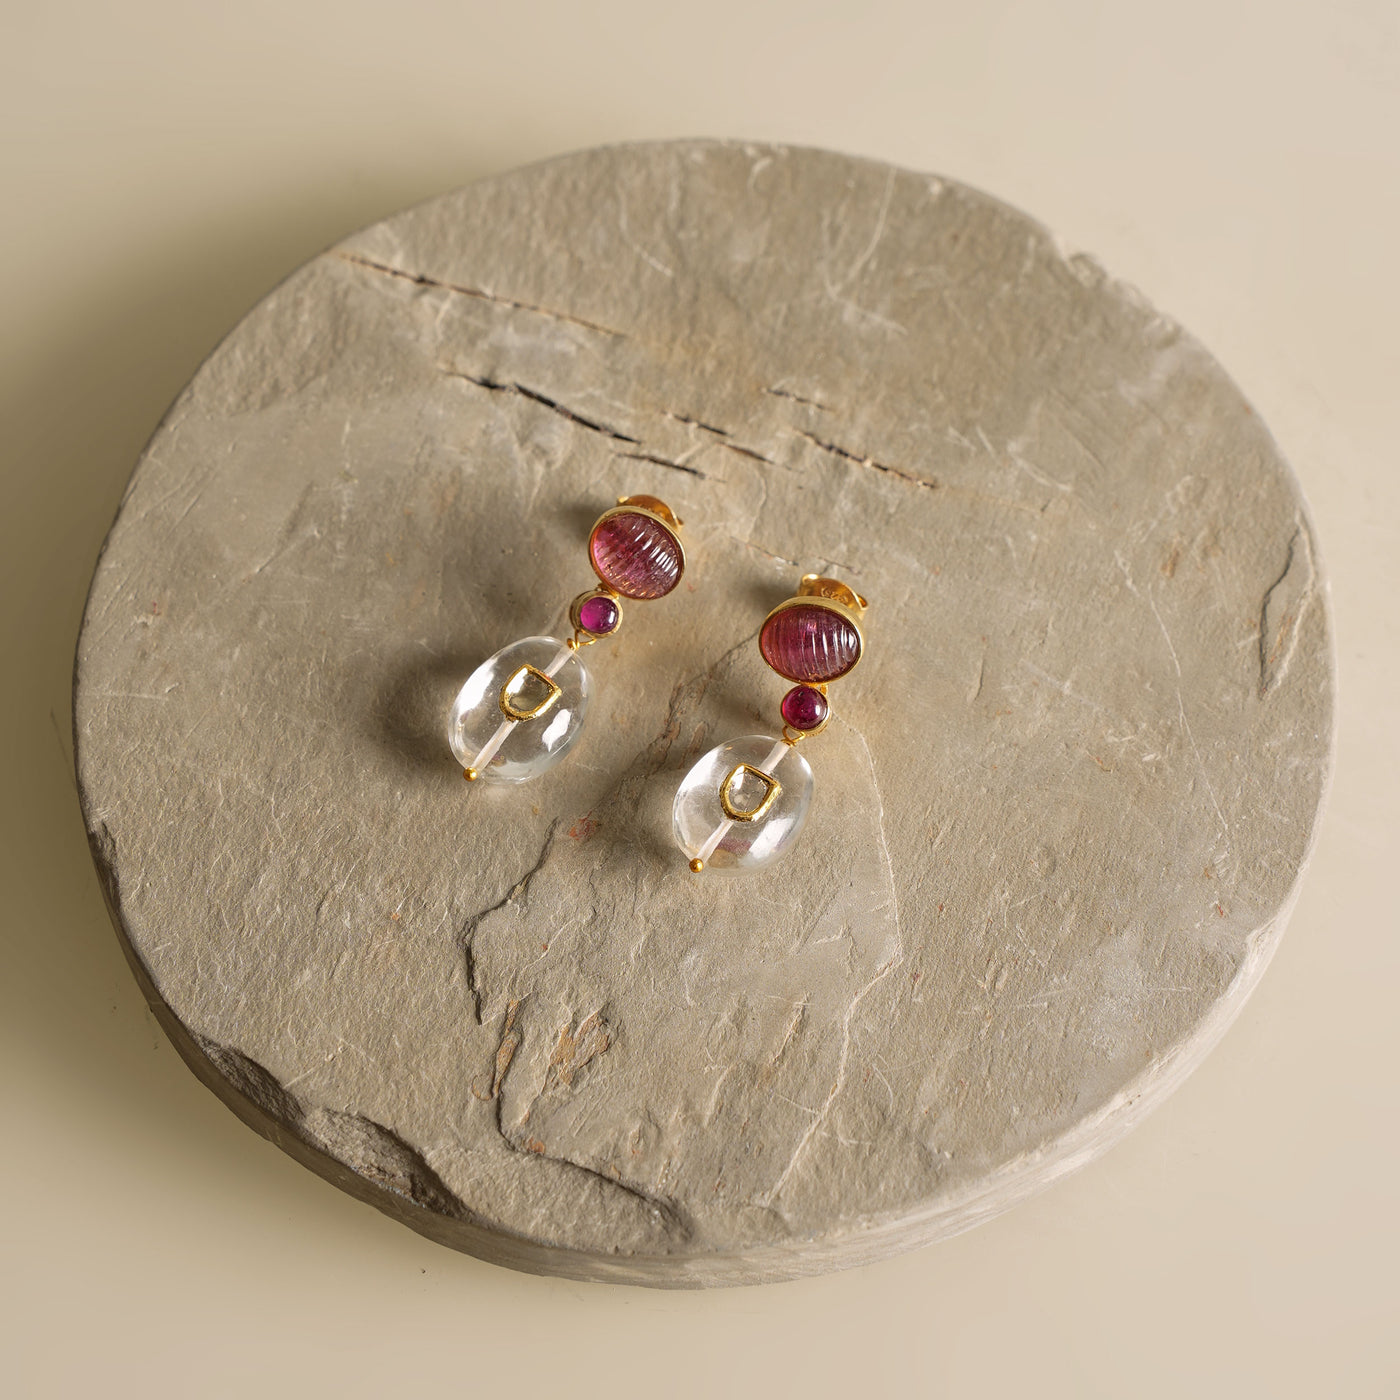 ZAYN BY SUNENA carved gemstone earrings